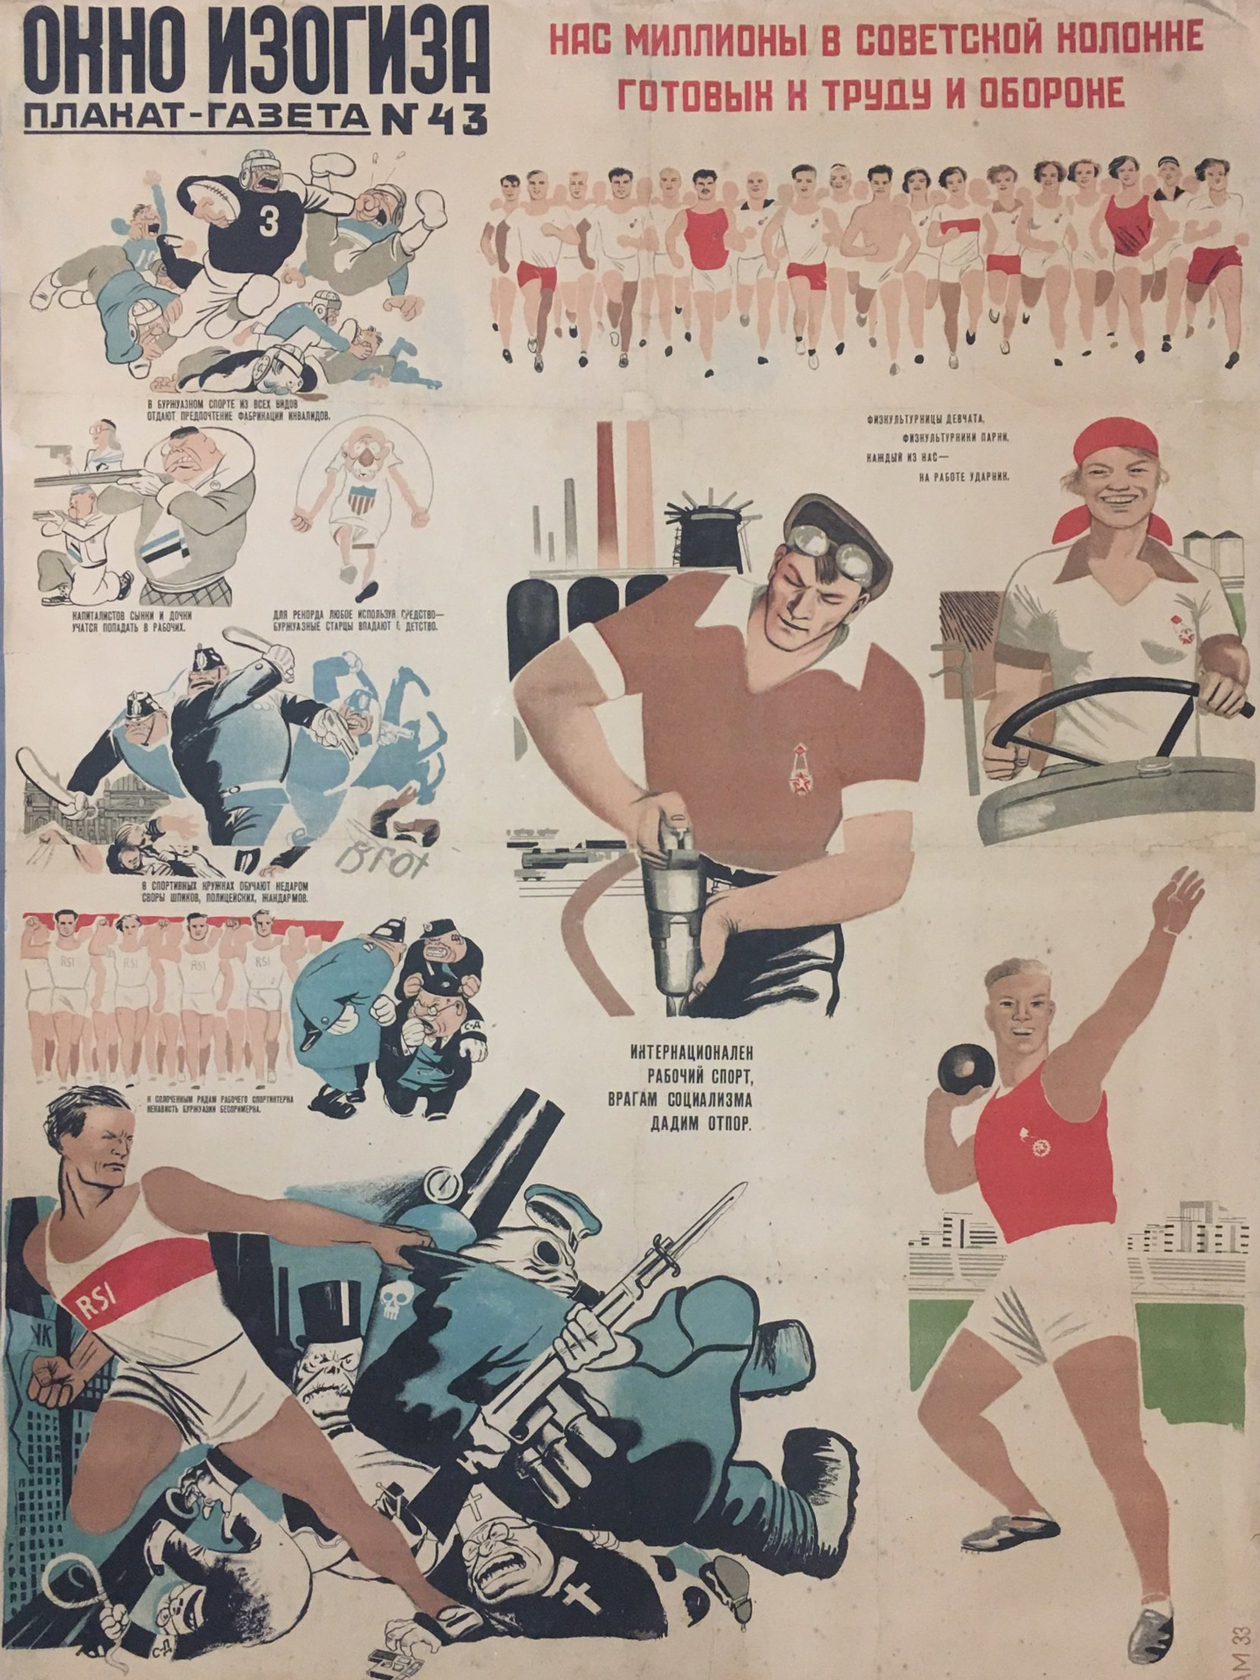 Советский плакат 1933 года, посвященный комплексу ГТО. Источник: А. А. Малеинов / wikimedia.org